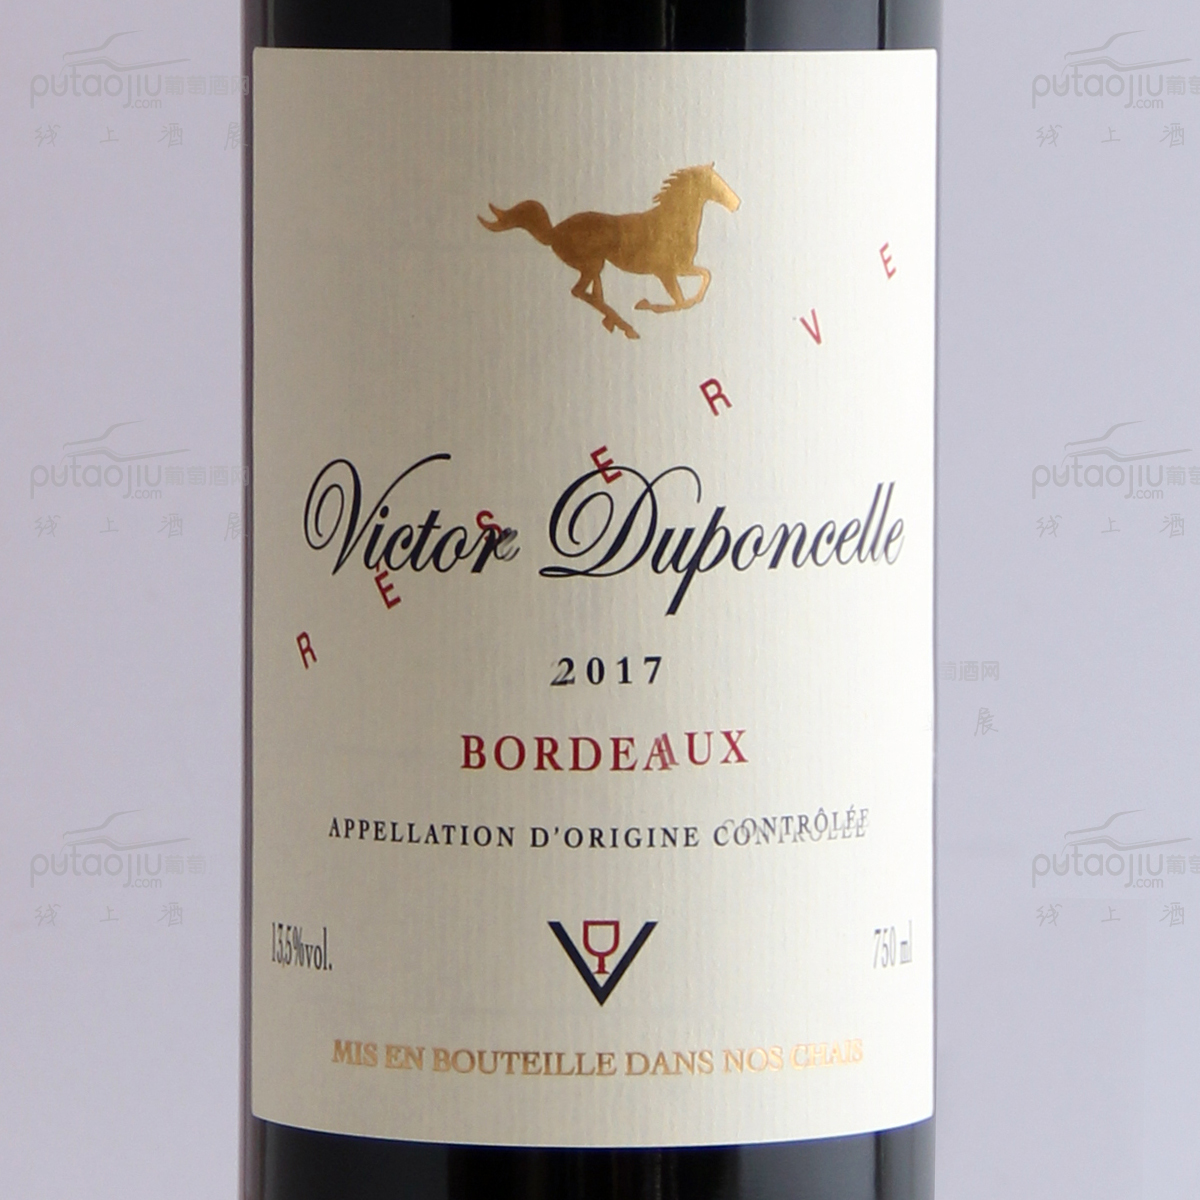 法国奥克地区Victor Duponcelle酒庄混酿维克多波尔多AOC干红葡萄酒